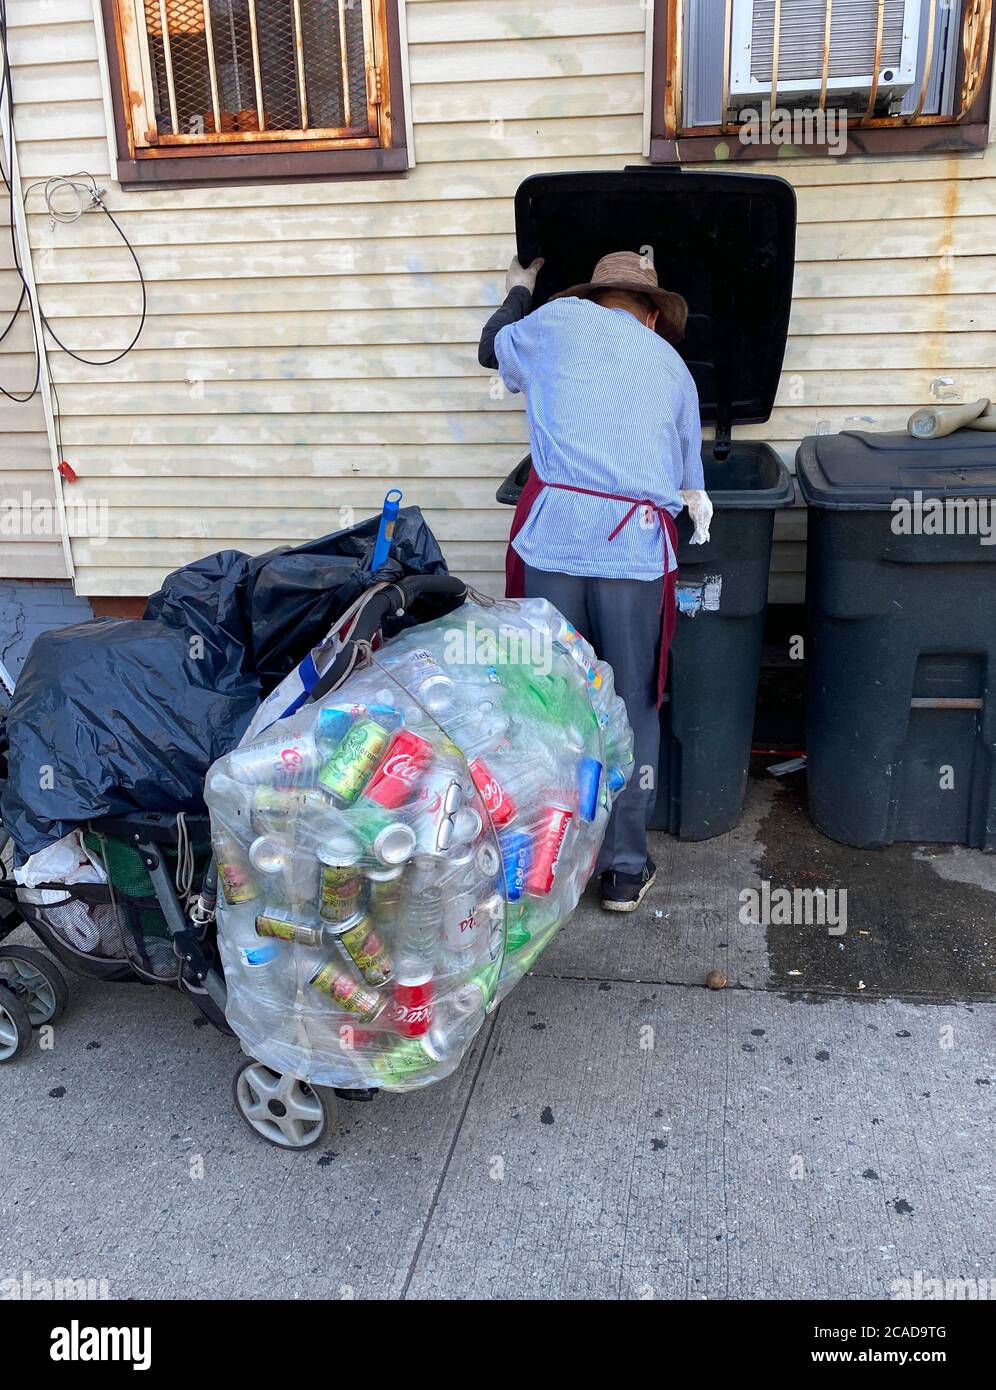 Der Mensch arbeitet hart daran, ausrangierte Aluminiumdosen zu sammeln, um ein Leben an einer Straße in Brooklyn, New York, zu kratzen. Stockfoto